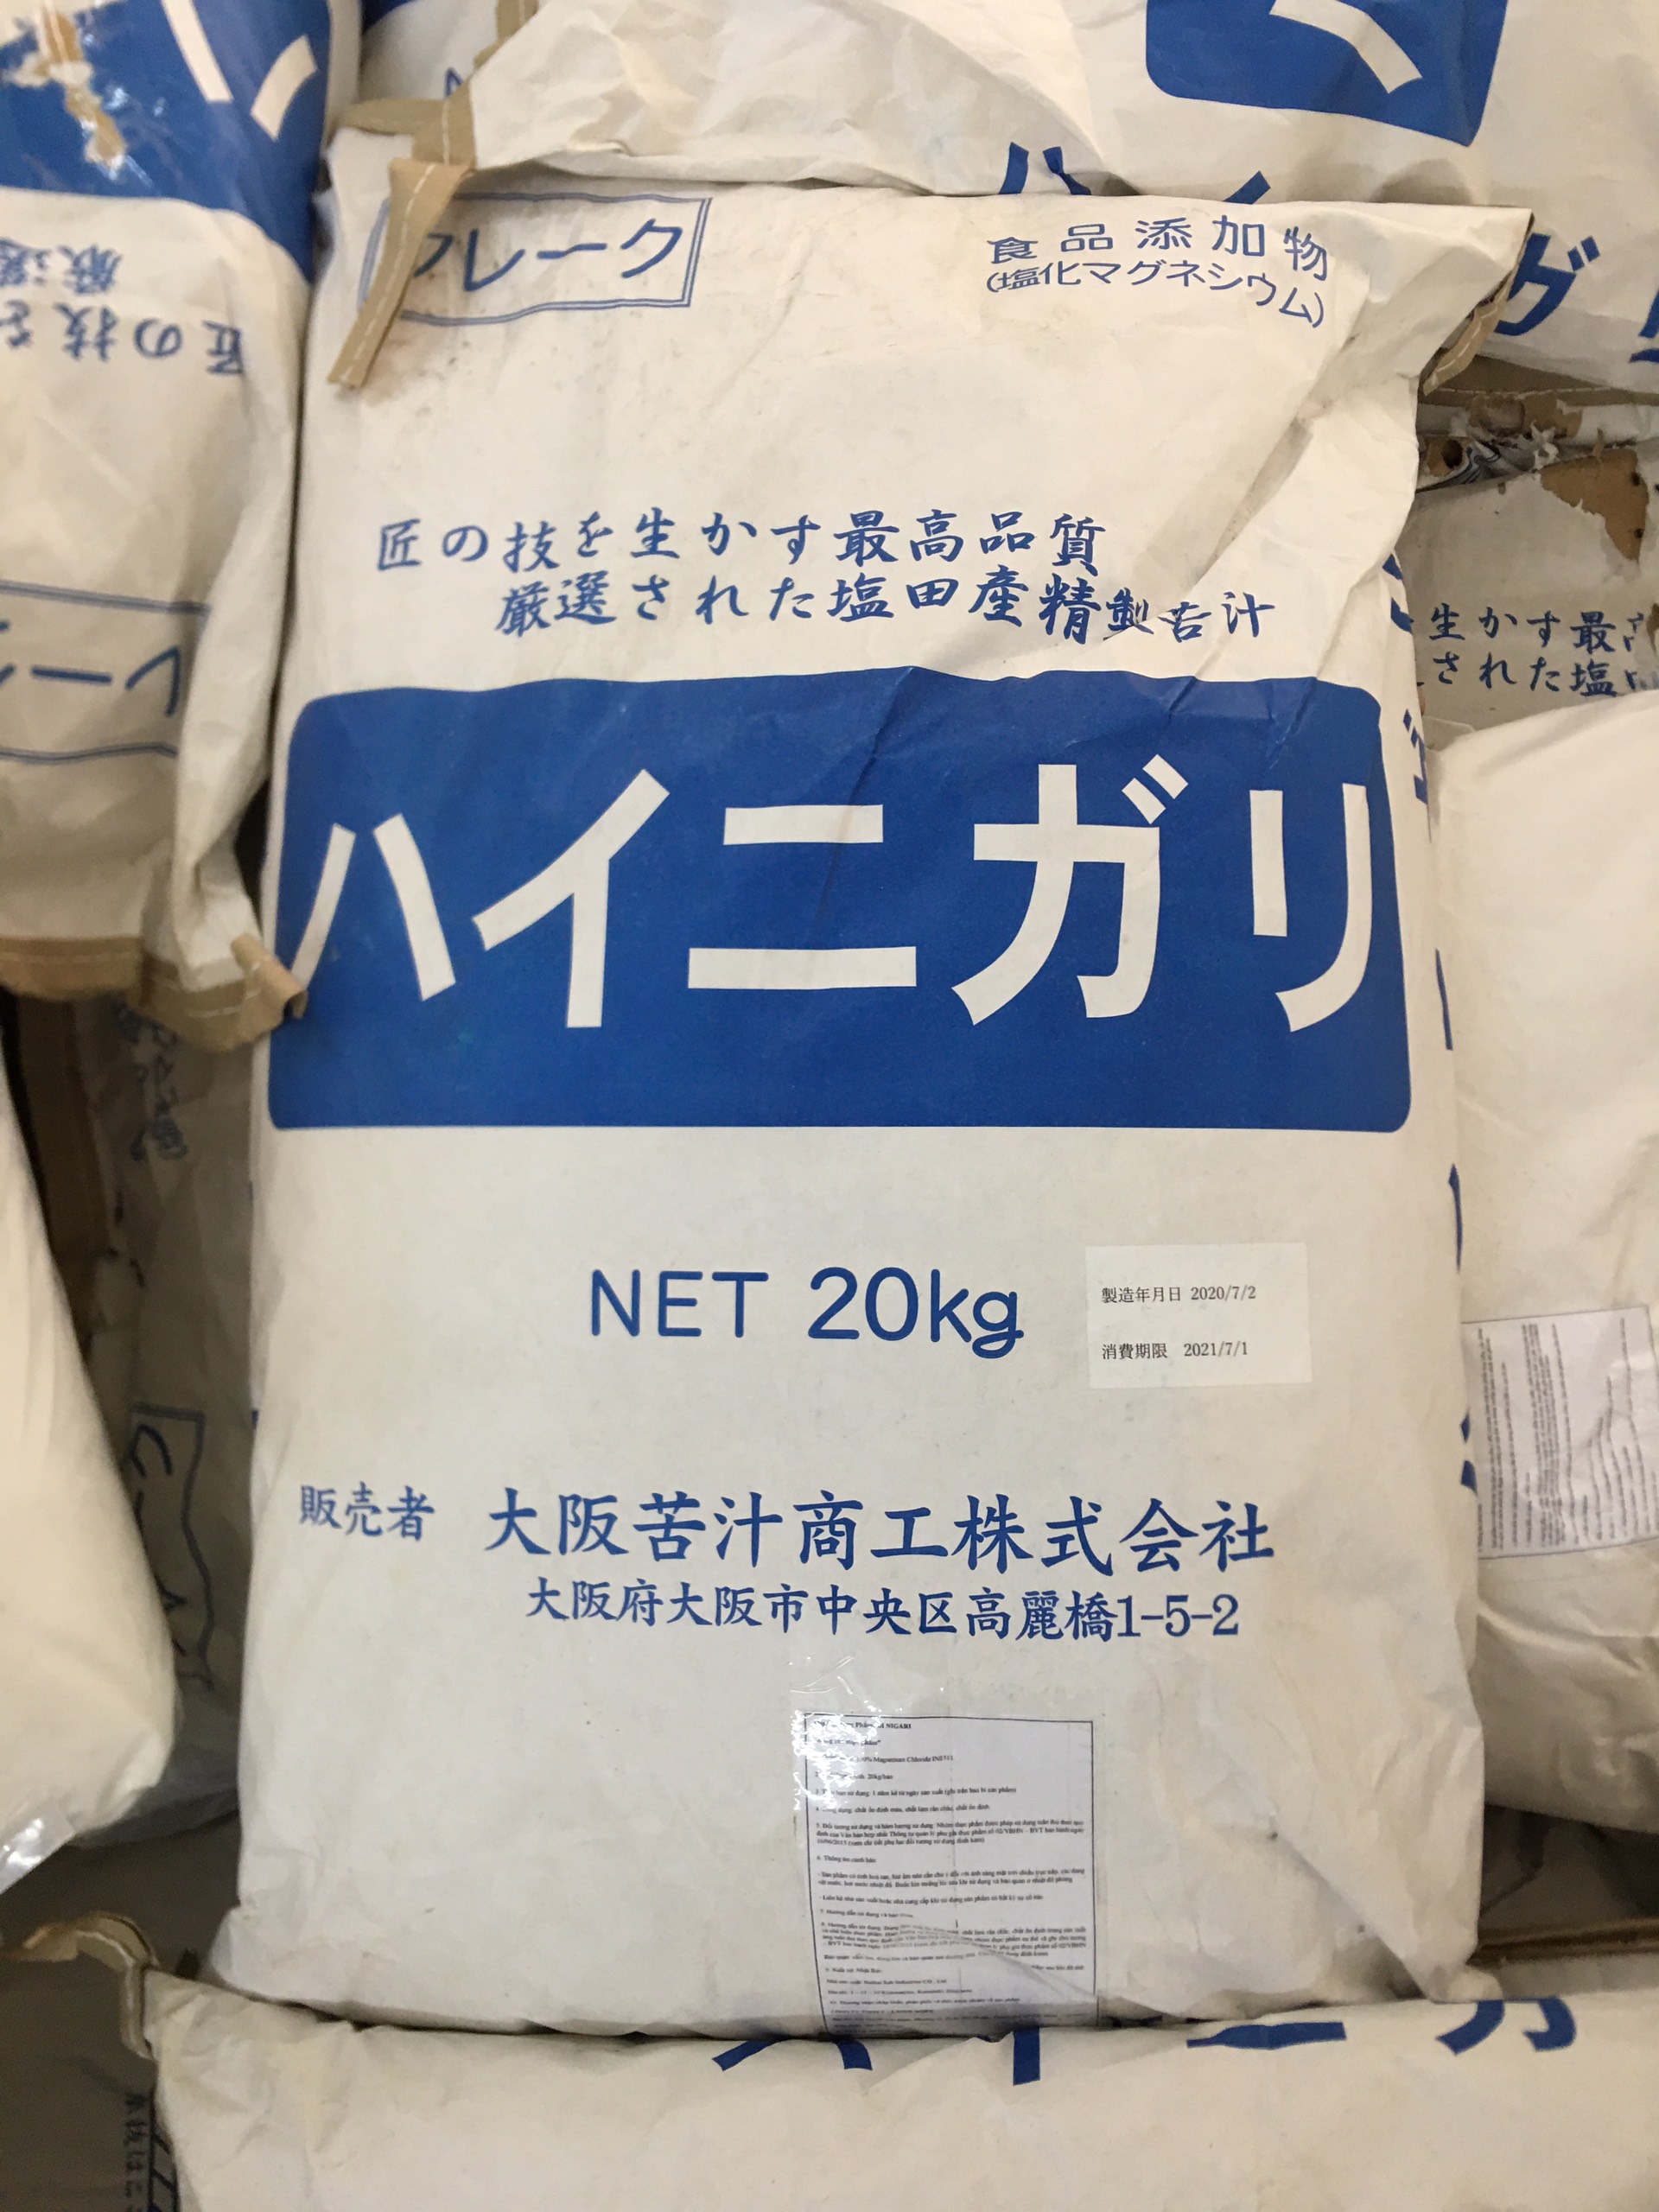 Muối NIGARI Nhật Bản 200g làm đậu hũ nhanh đông ngon béo (Made in Japan)